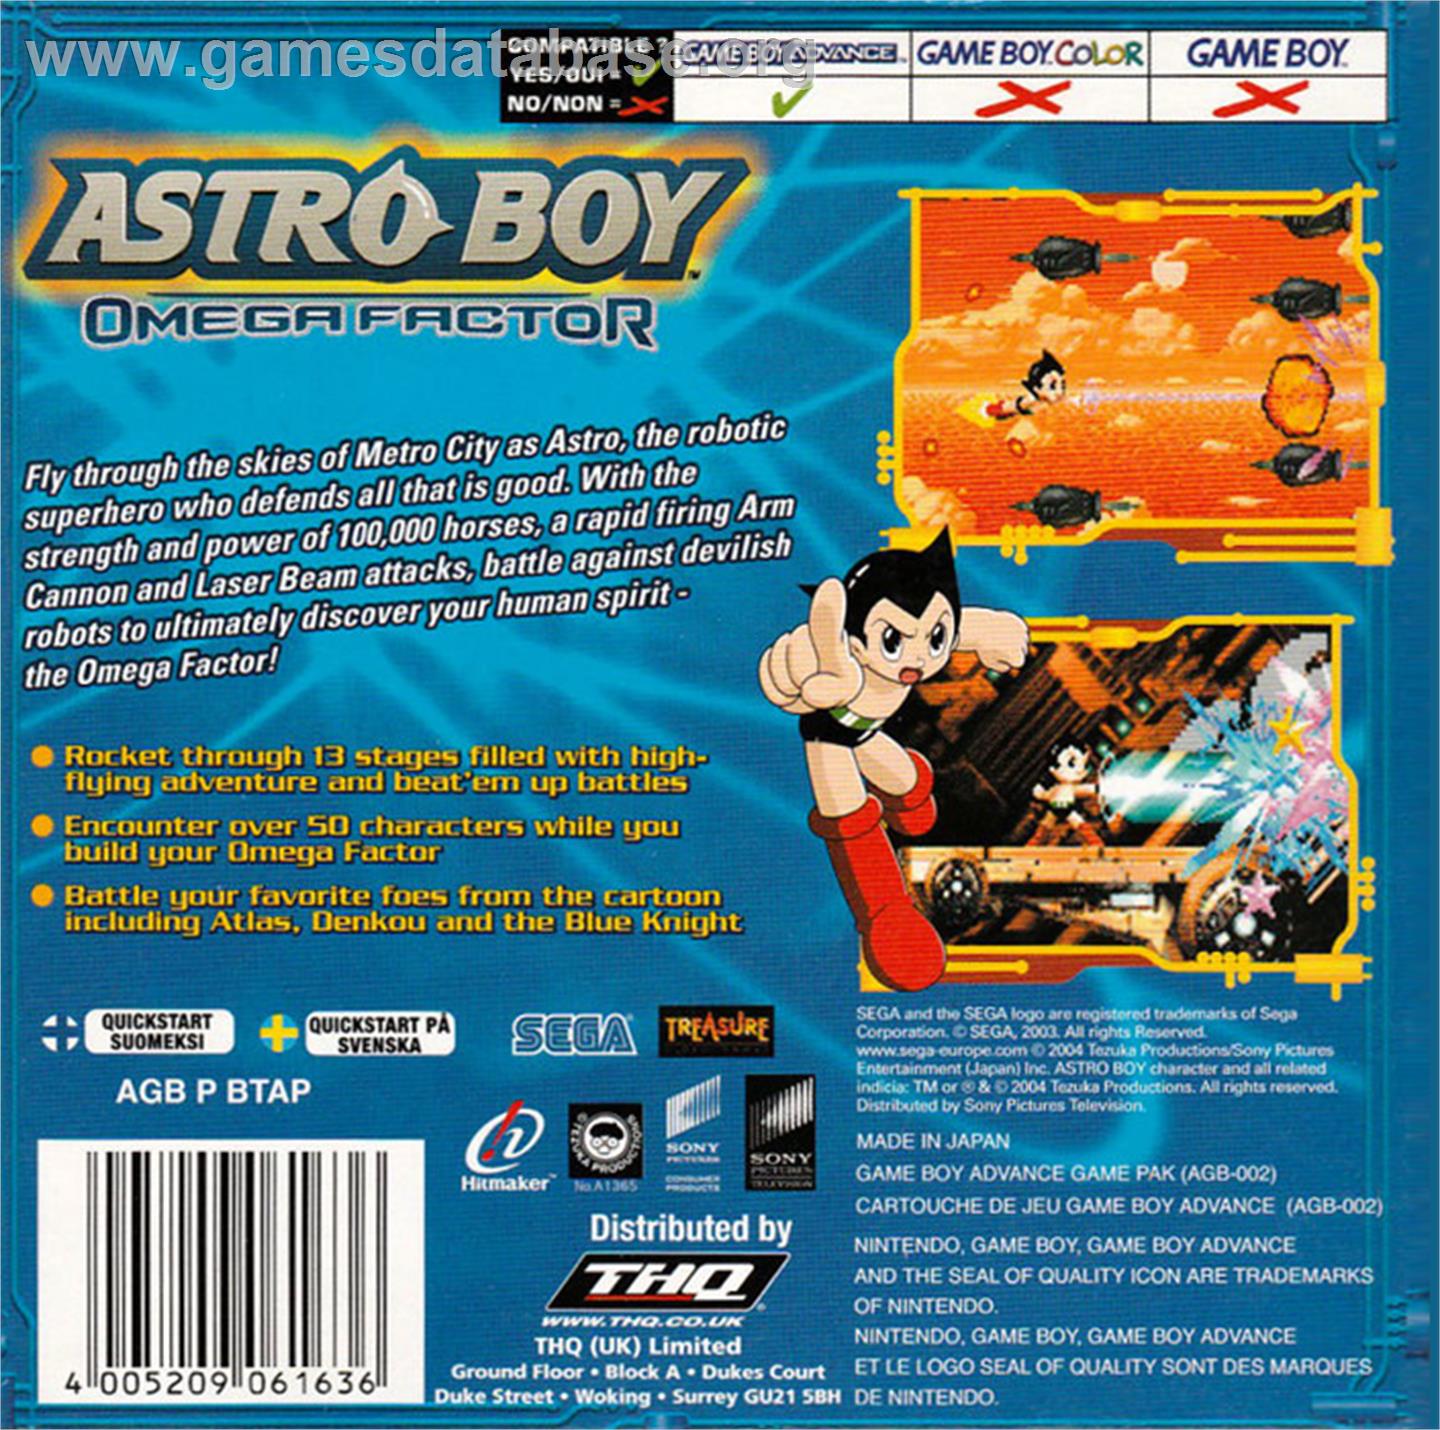 Astro Boy: Omega Factor - Nintendo Game Boy Advance - Artwork - Box Back